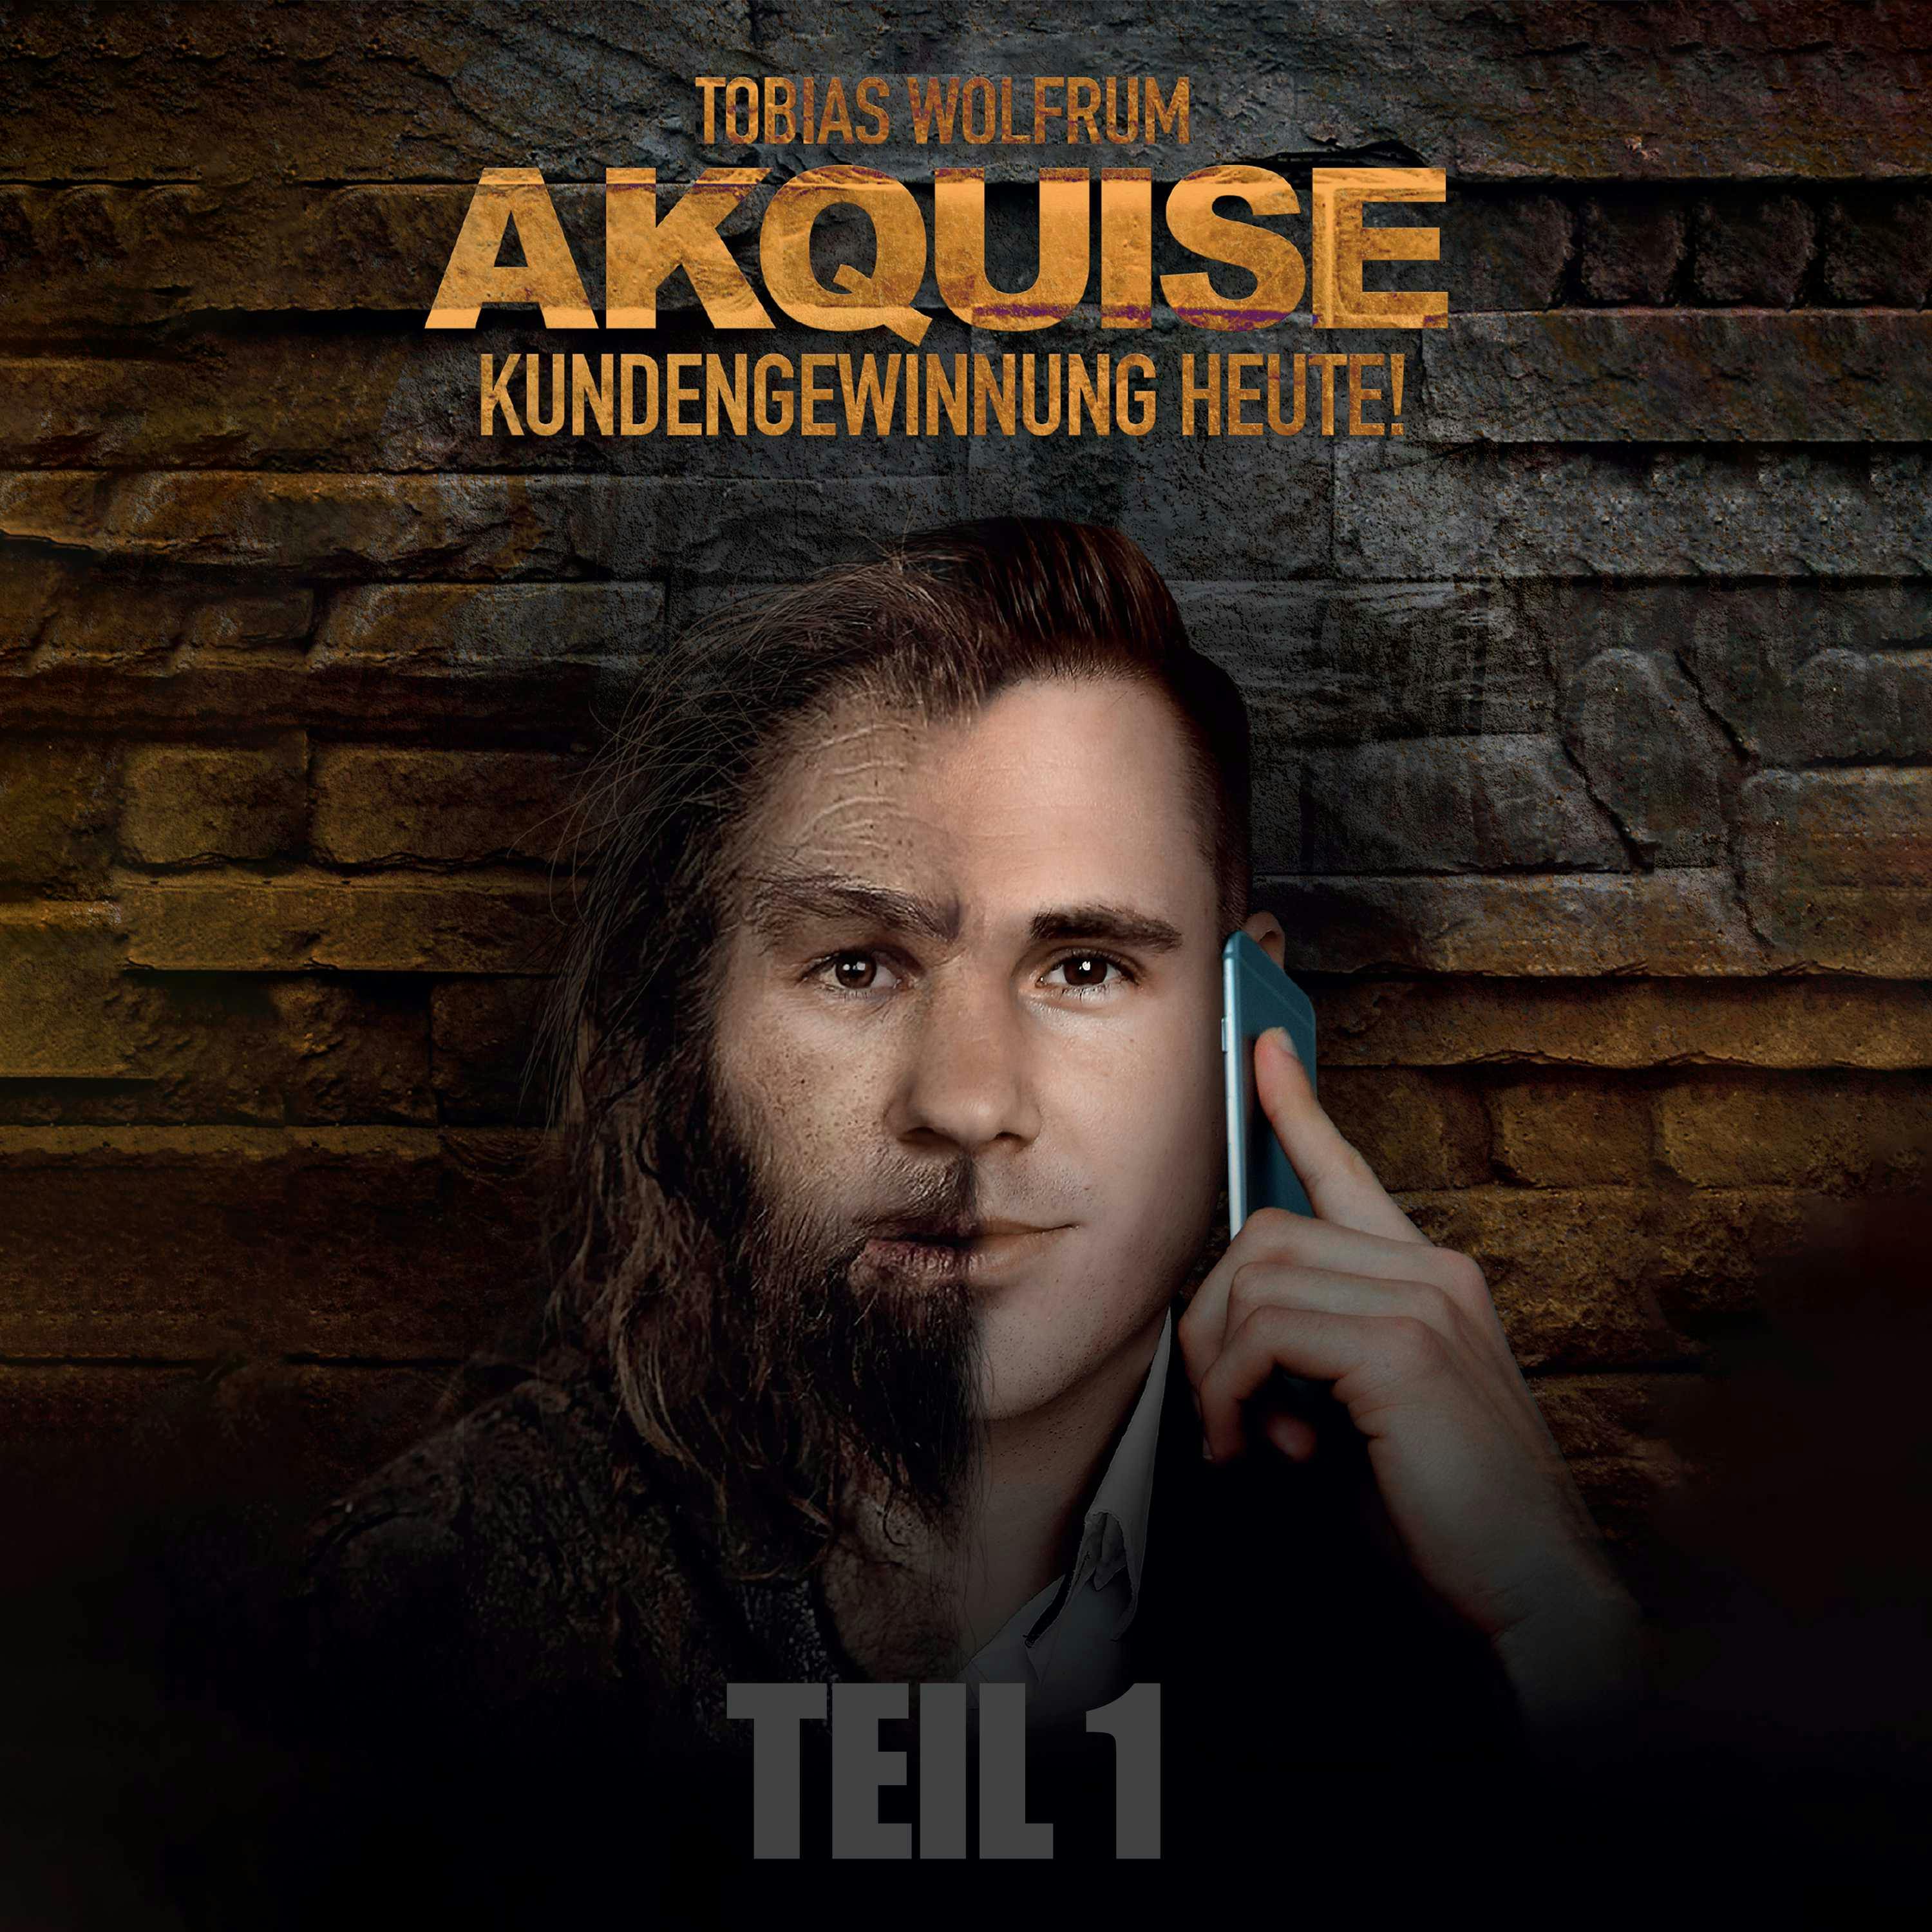 TEIL 1: Akquise - Kundengewinnung heute! - Tobias Wolfrum